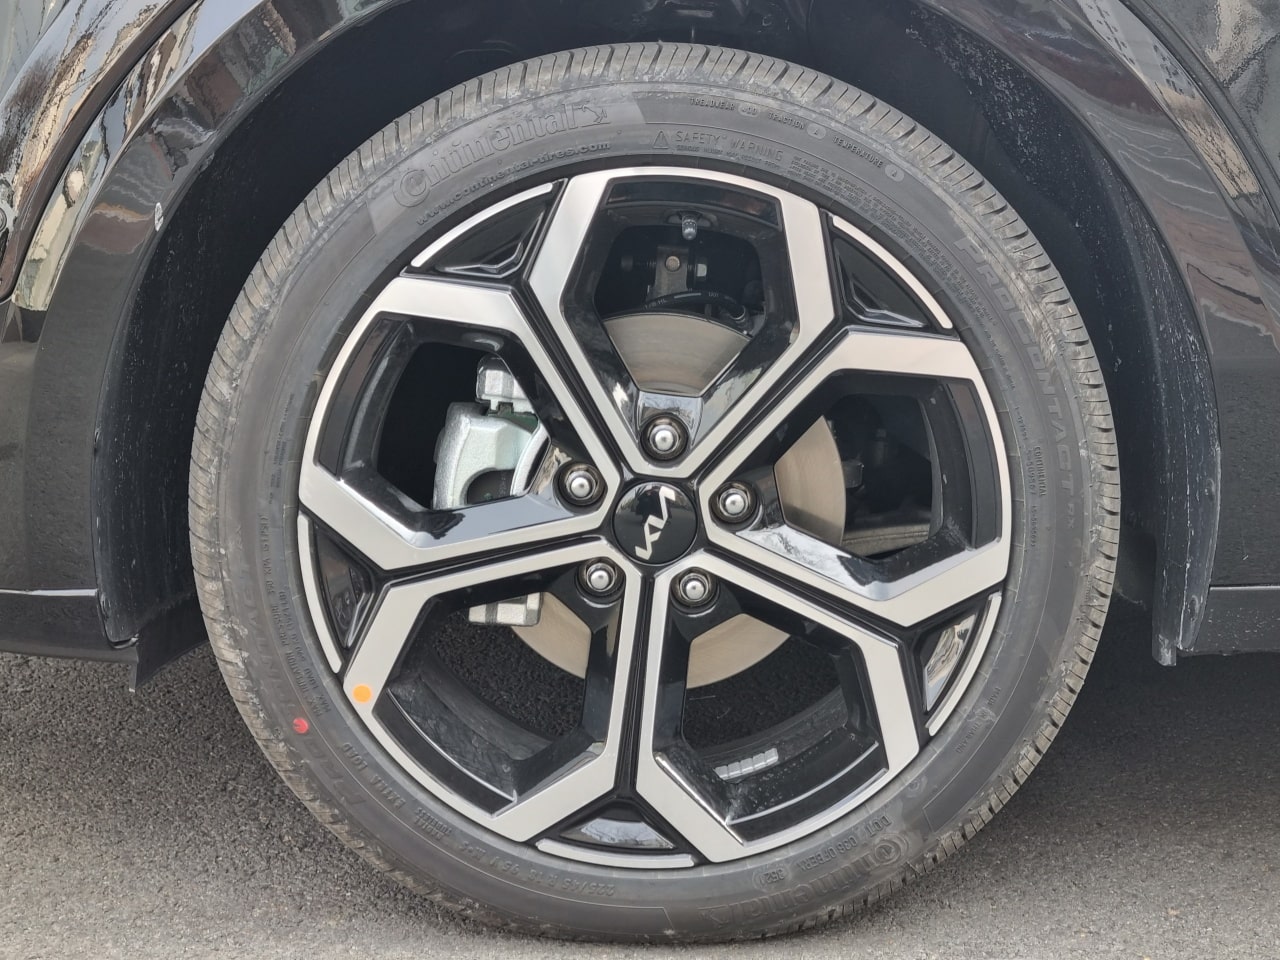 신형 니로 시그니처에는 18인치 휠 타이어가 신겨져 있었습니다. 타이어는 콘티넨탈의 프로콘택트 RX&#44; 규격은 225/45 R18입니다.